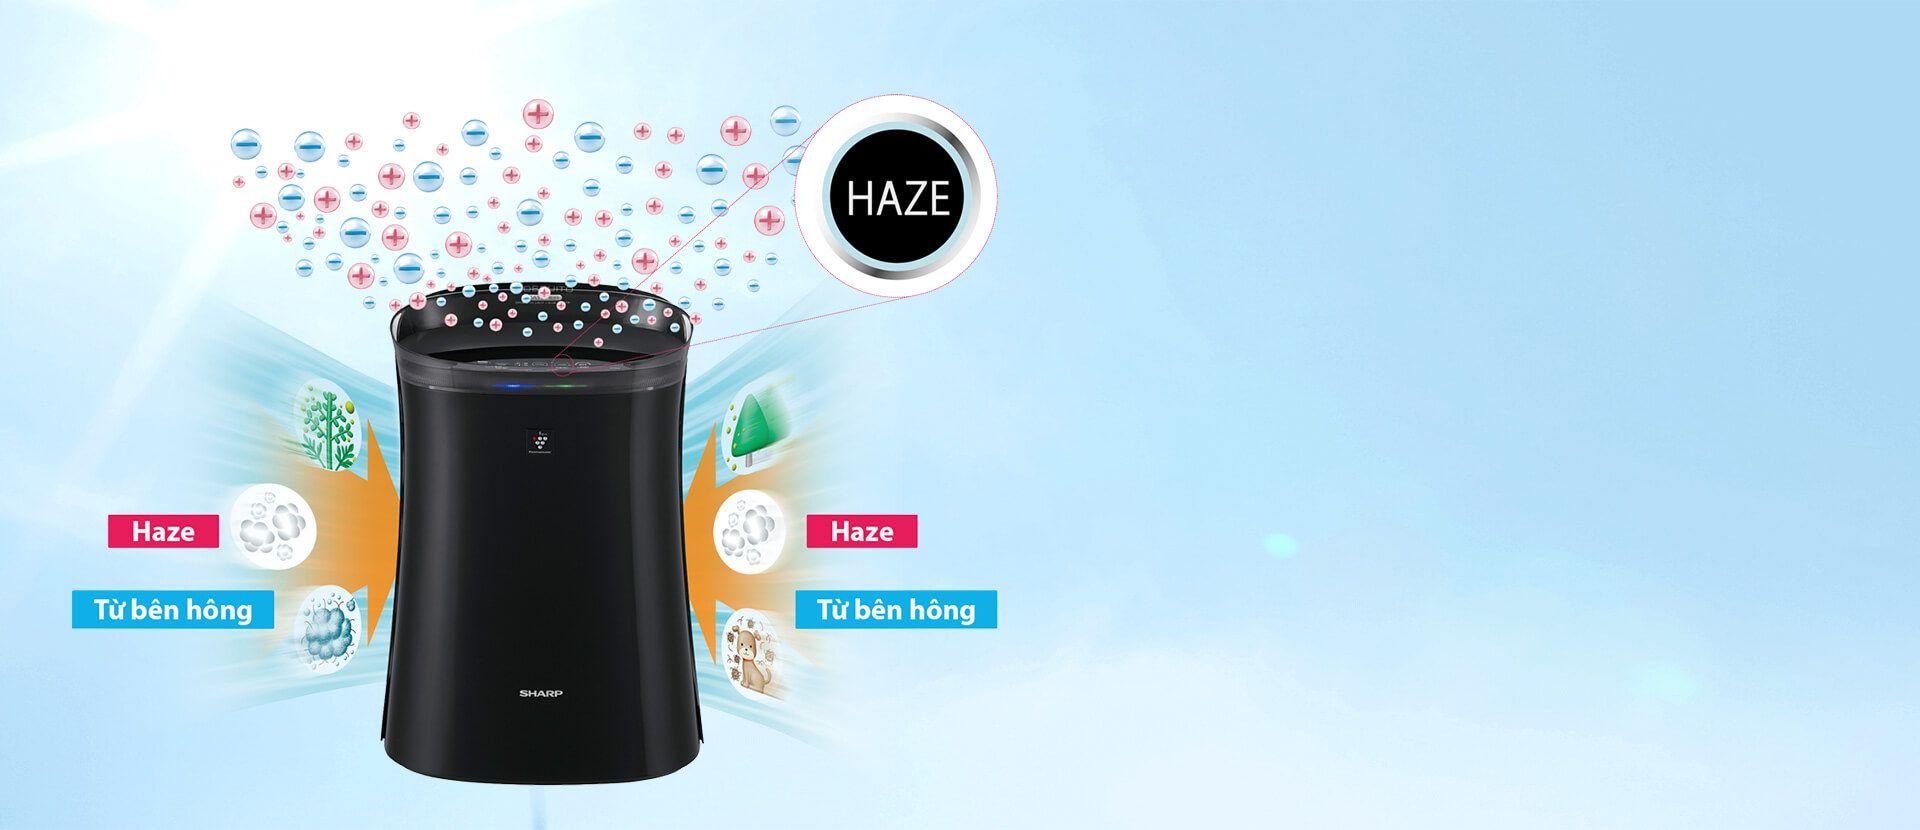 Công nghệ Haze giúp tốc độ lọc trên sản phẩm của Sharp được nhanh hơn 